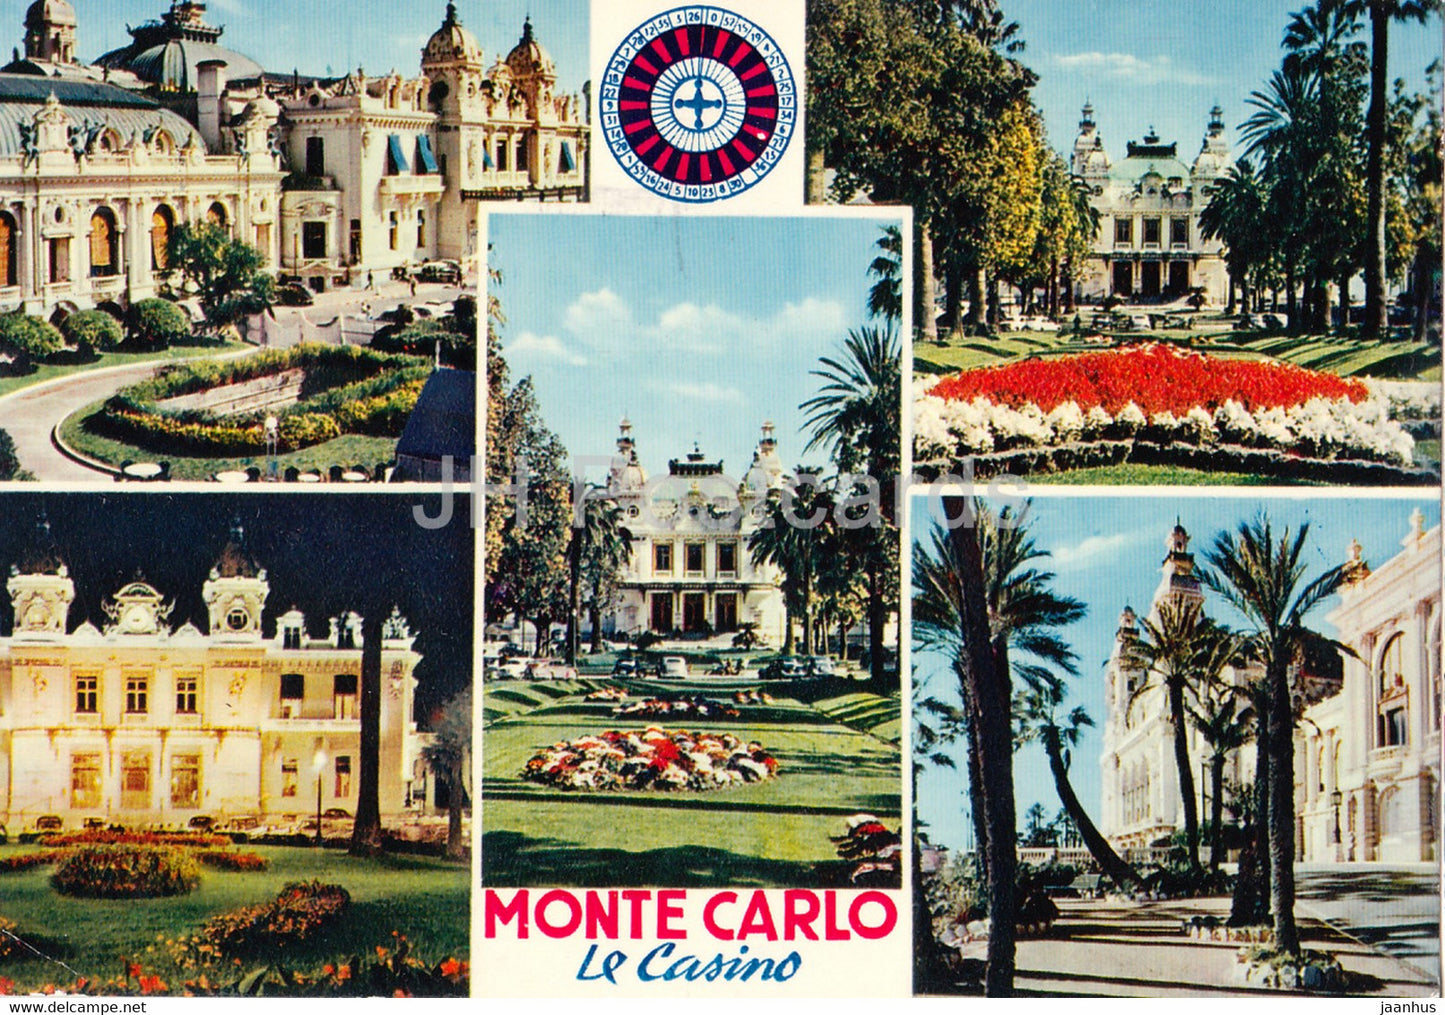 Monte Carlo - Le Casino - Reflets de la Cote d'Azur - 1973 - Monaco - used - JH Postcards